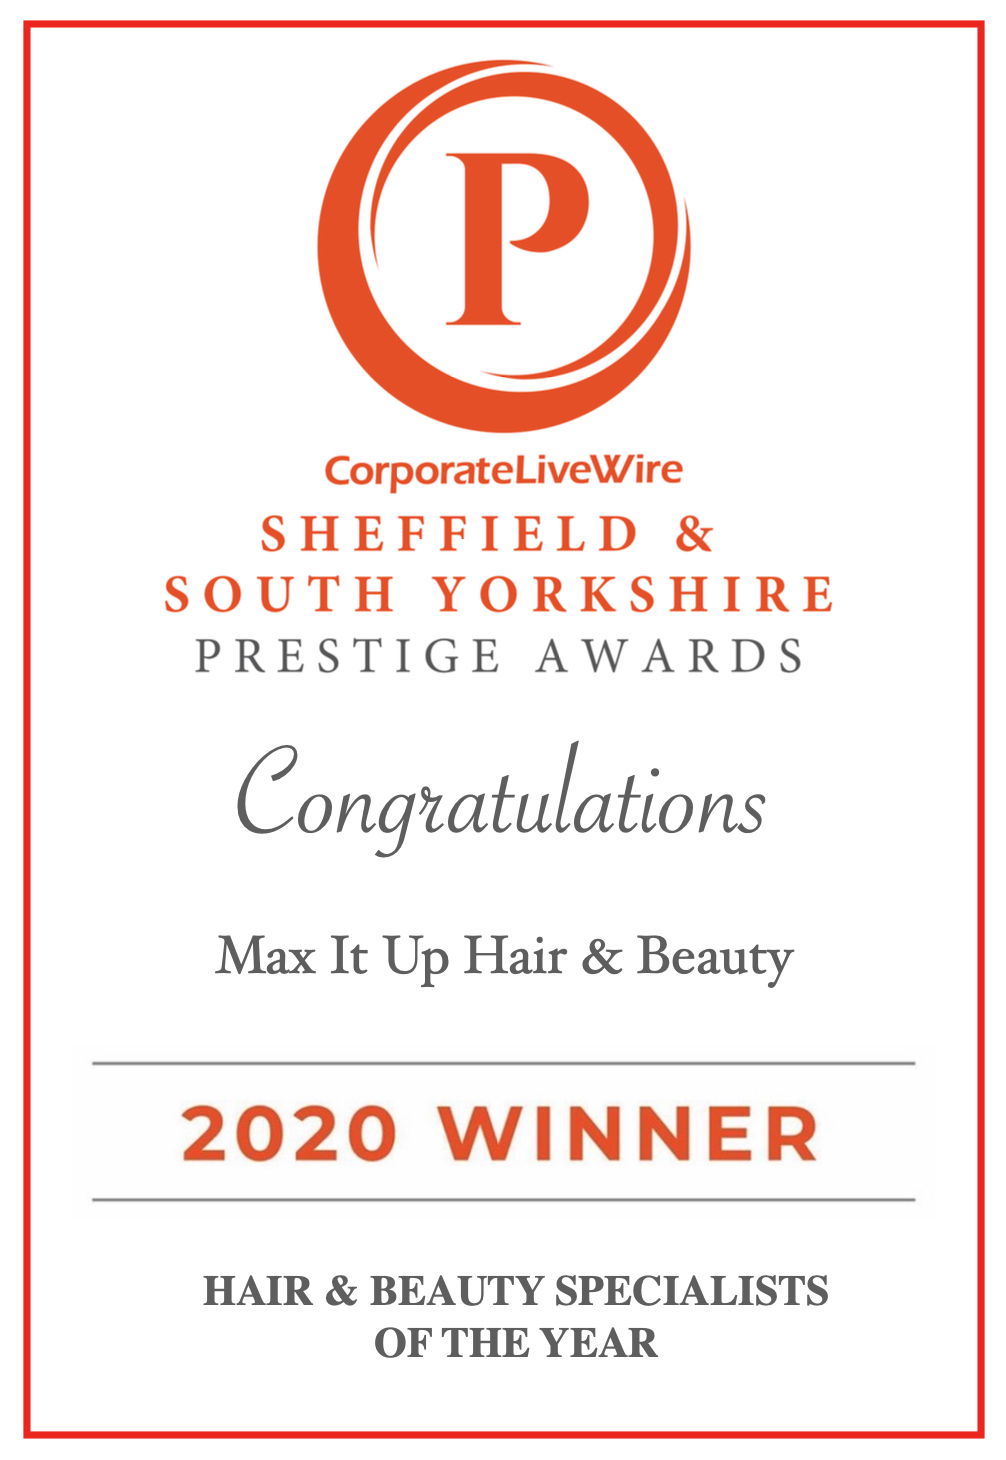 Winner of Prestige Awards 2020 - Best Hairstylist & Beauty Specialist